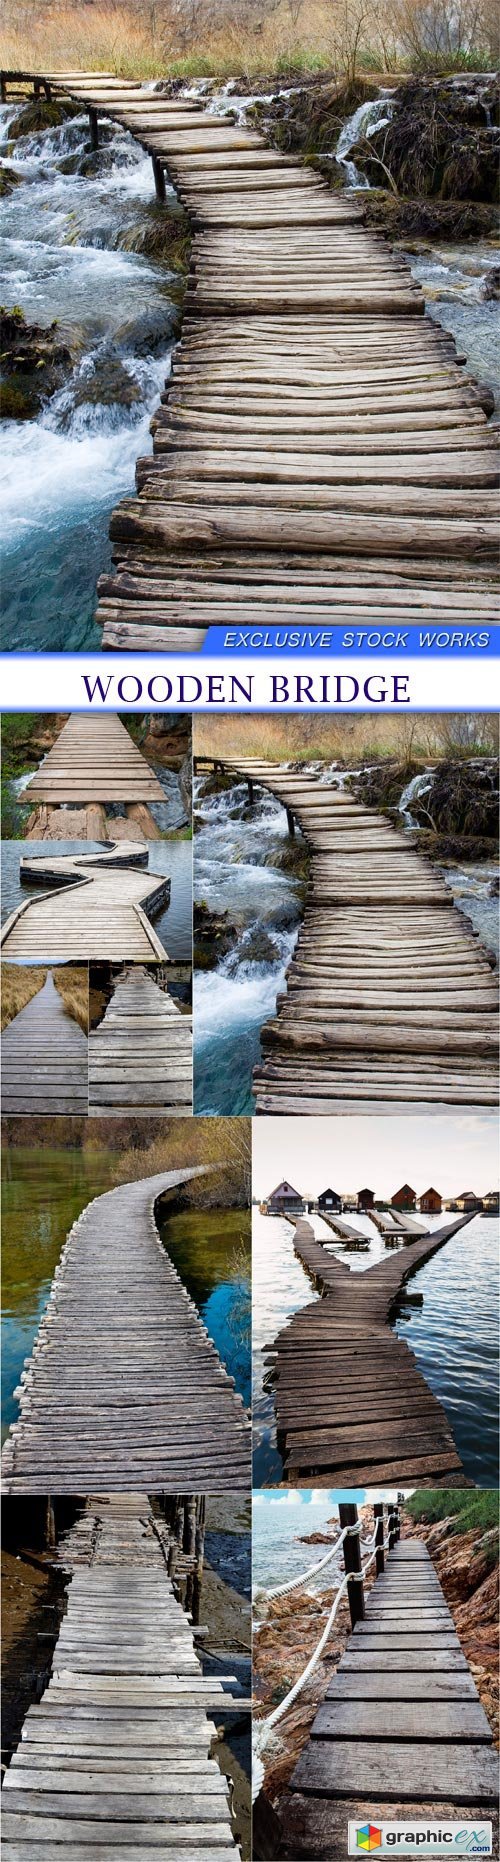 wooden bridge 9X JPEG